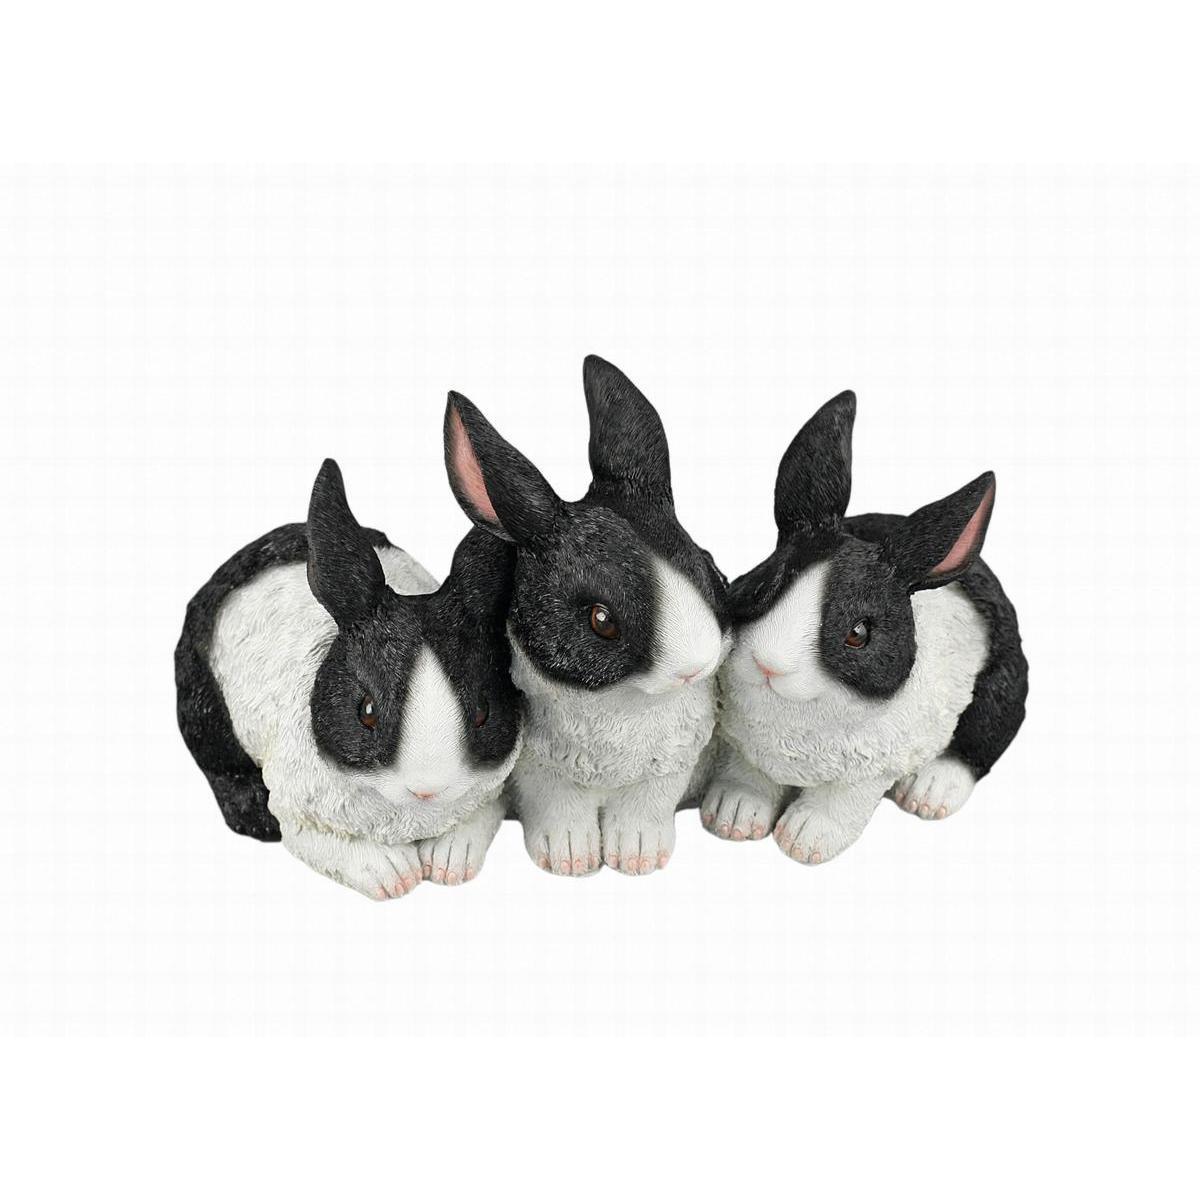 3 lapins décoratifs - Polyrésine - 26,5 x 15 x H 15 cm - Noir, Blanc